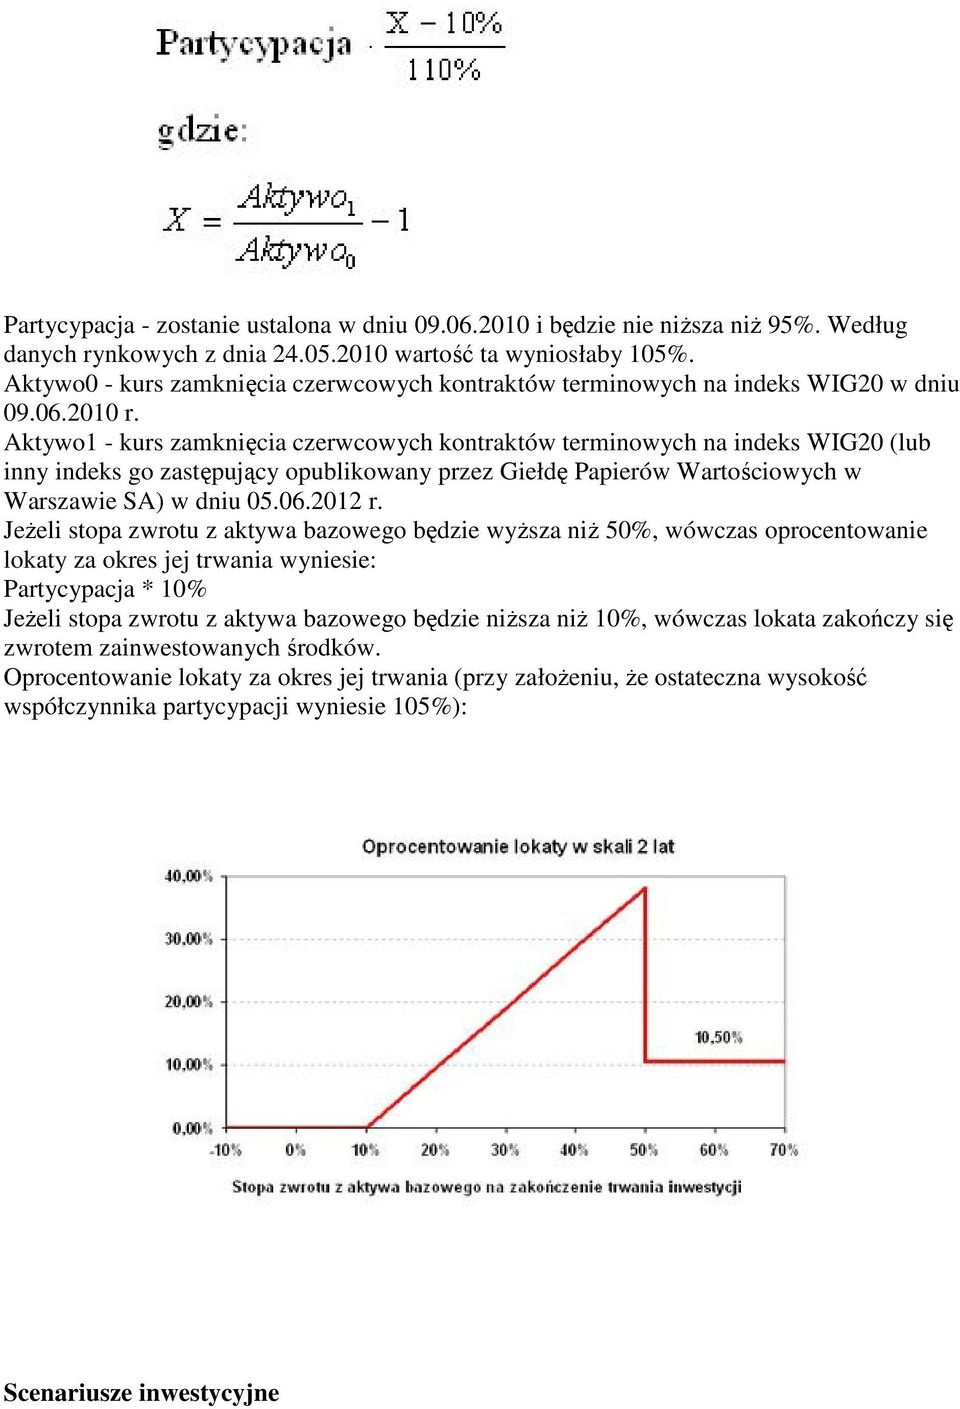 Aktywo1 - kurs zamknięcia czerwcowych kontraktów terminowych na indeks WIG20 (lub inny indeks go zastępujący opublikowany przez Giełdę Papierów Wartościowych w Warszawie SA) w dniu 05.06.2012 r.